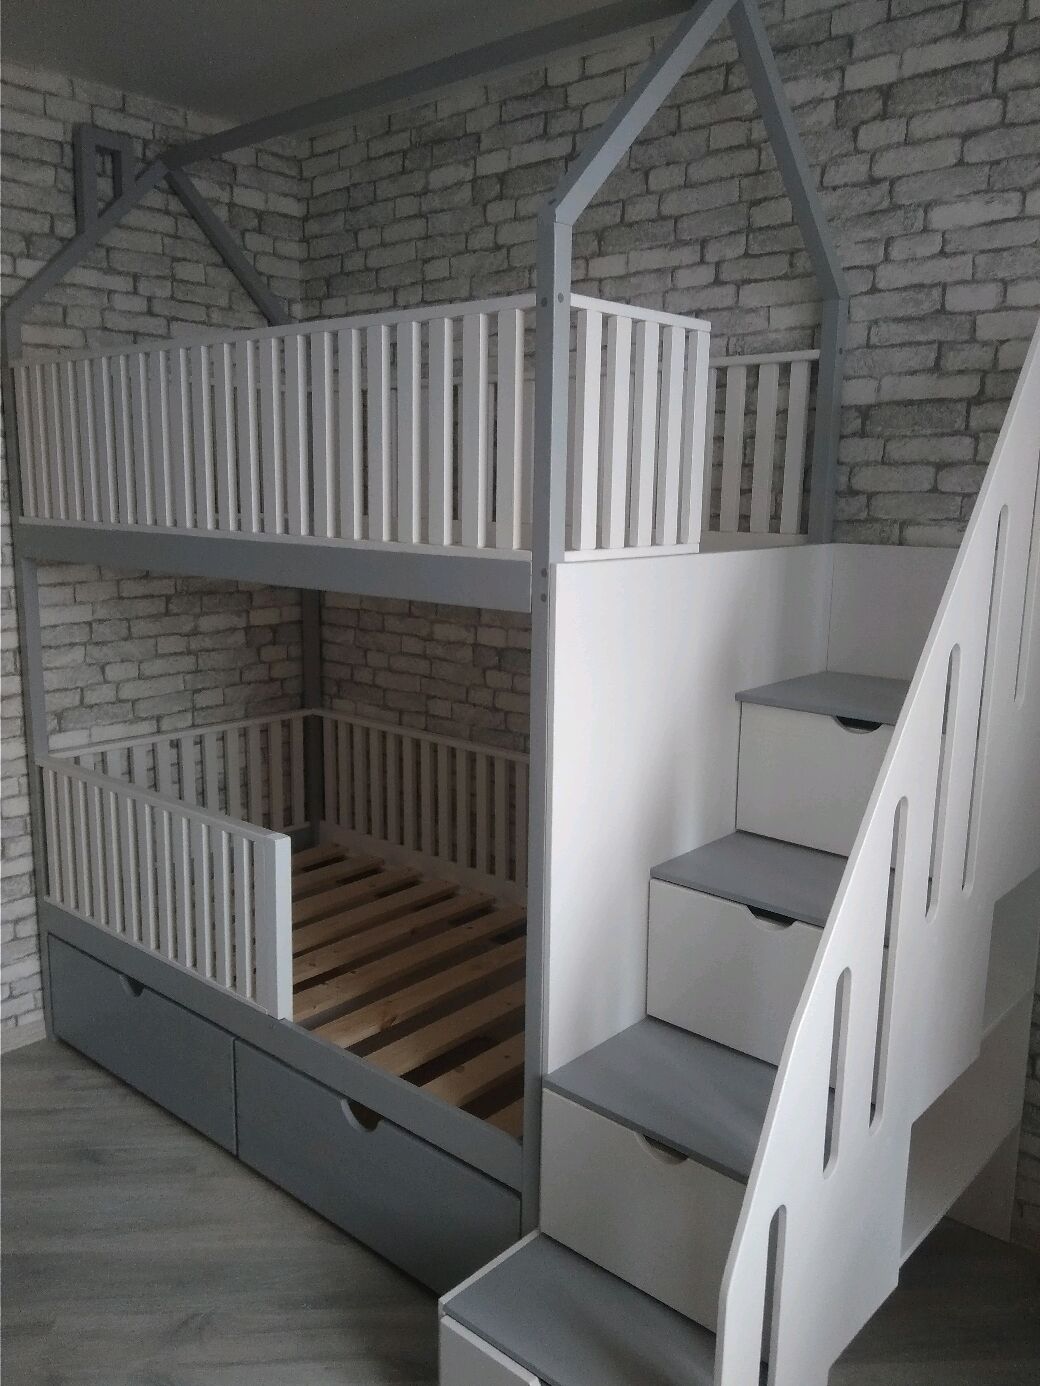 двухъярусная кровать лестница сбоку